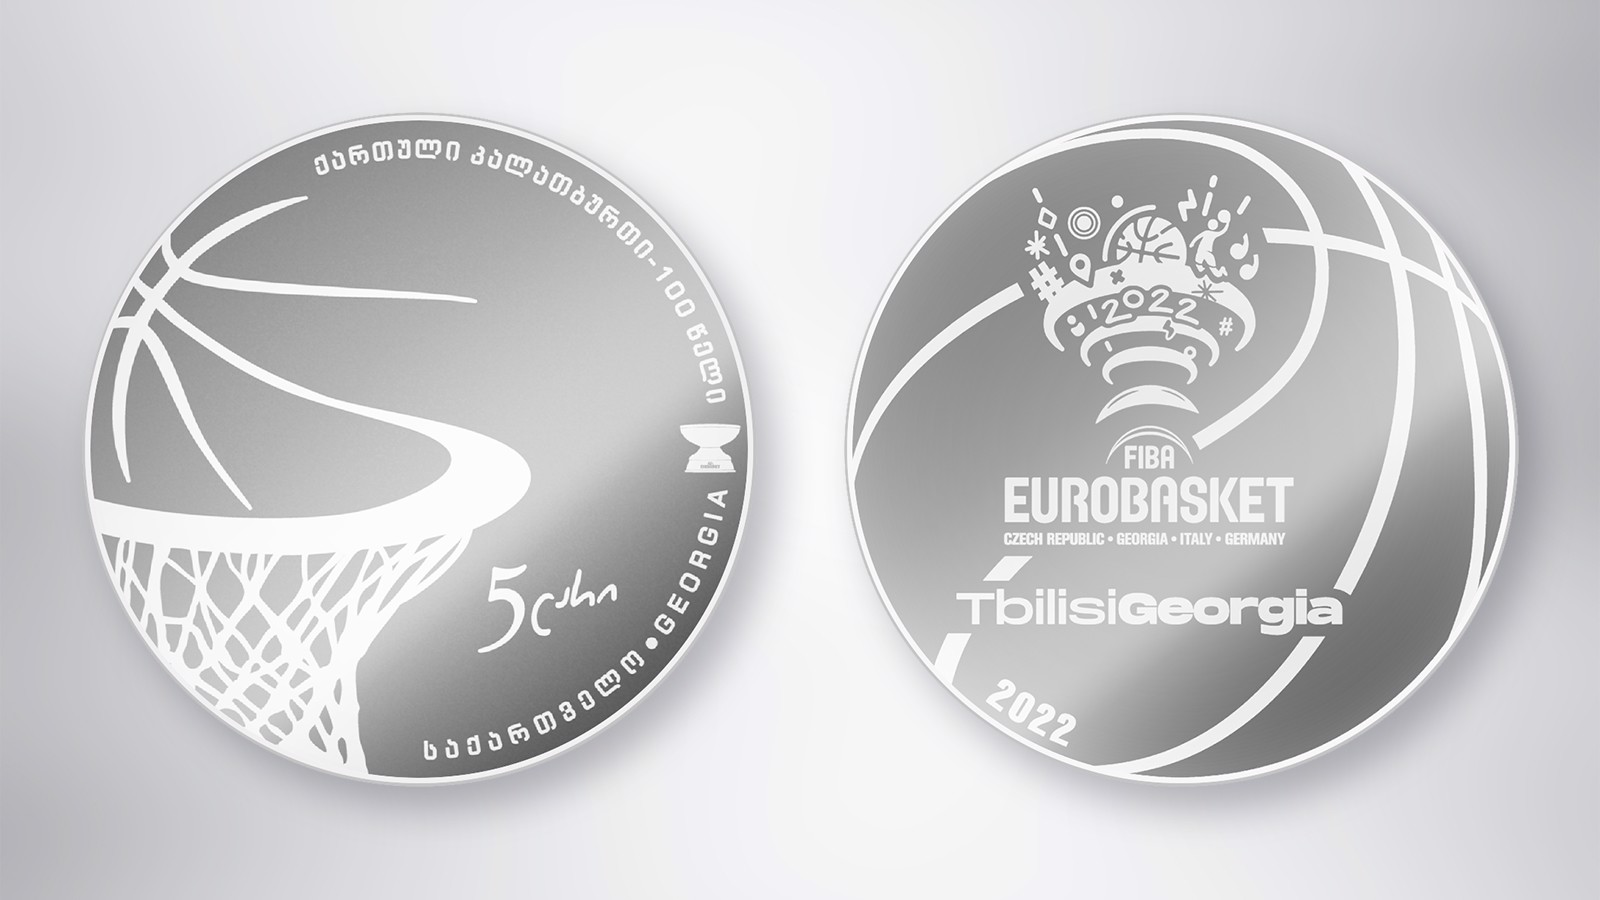 Нацбанк Грузии предложил коллекционерам монету в 5 лари в честь Евробаскета-2022